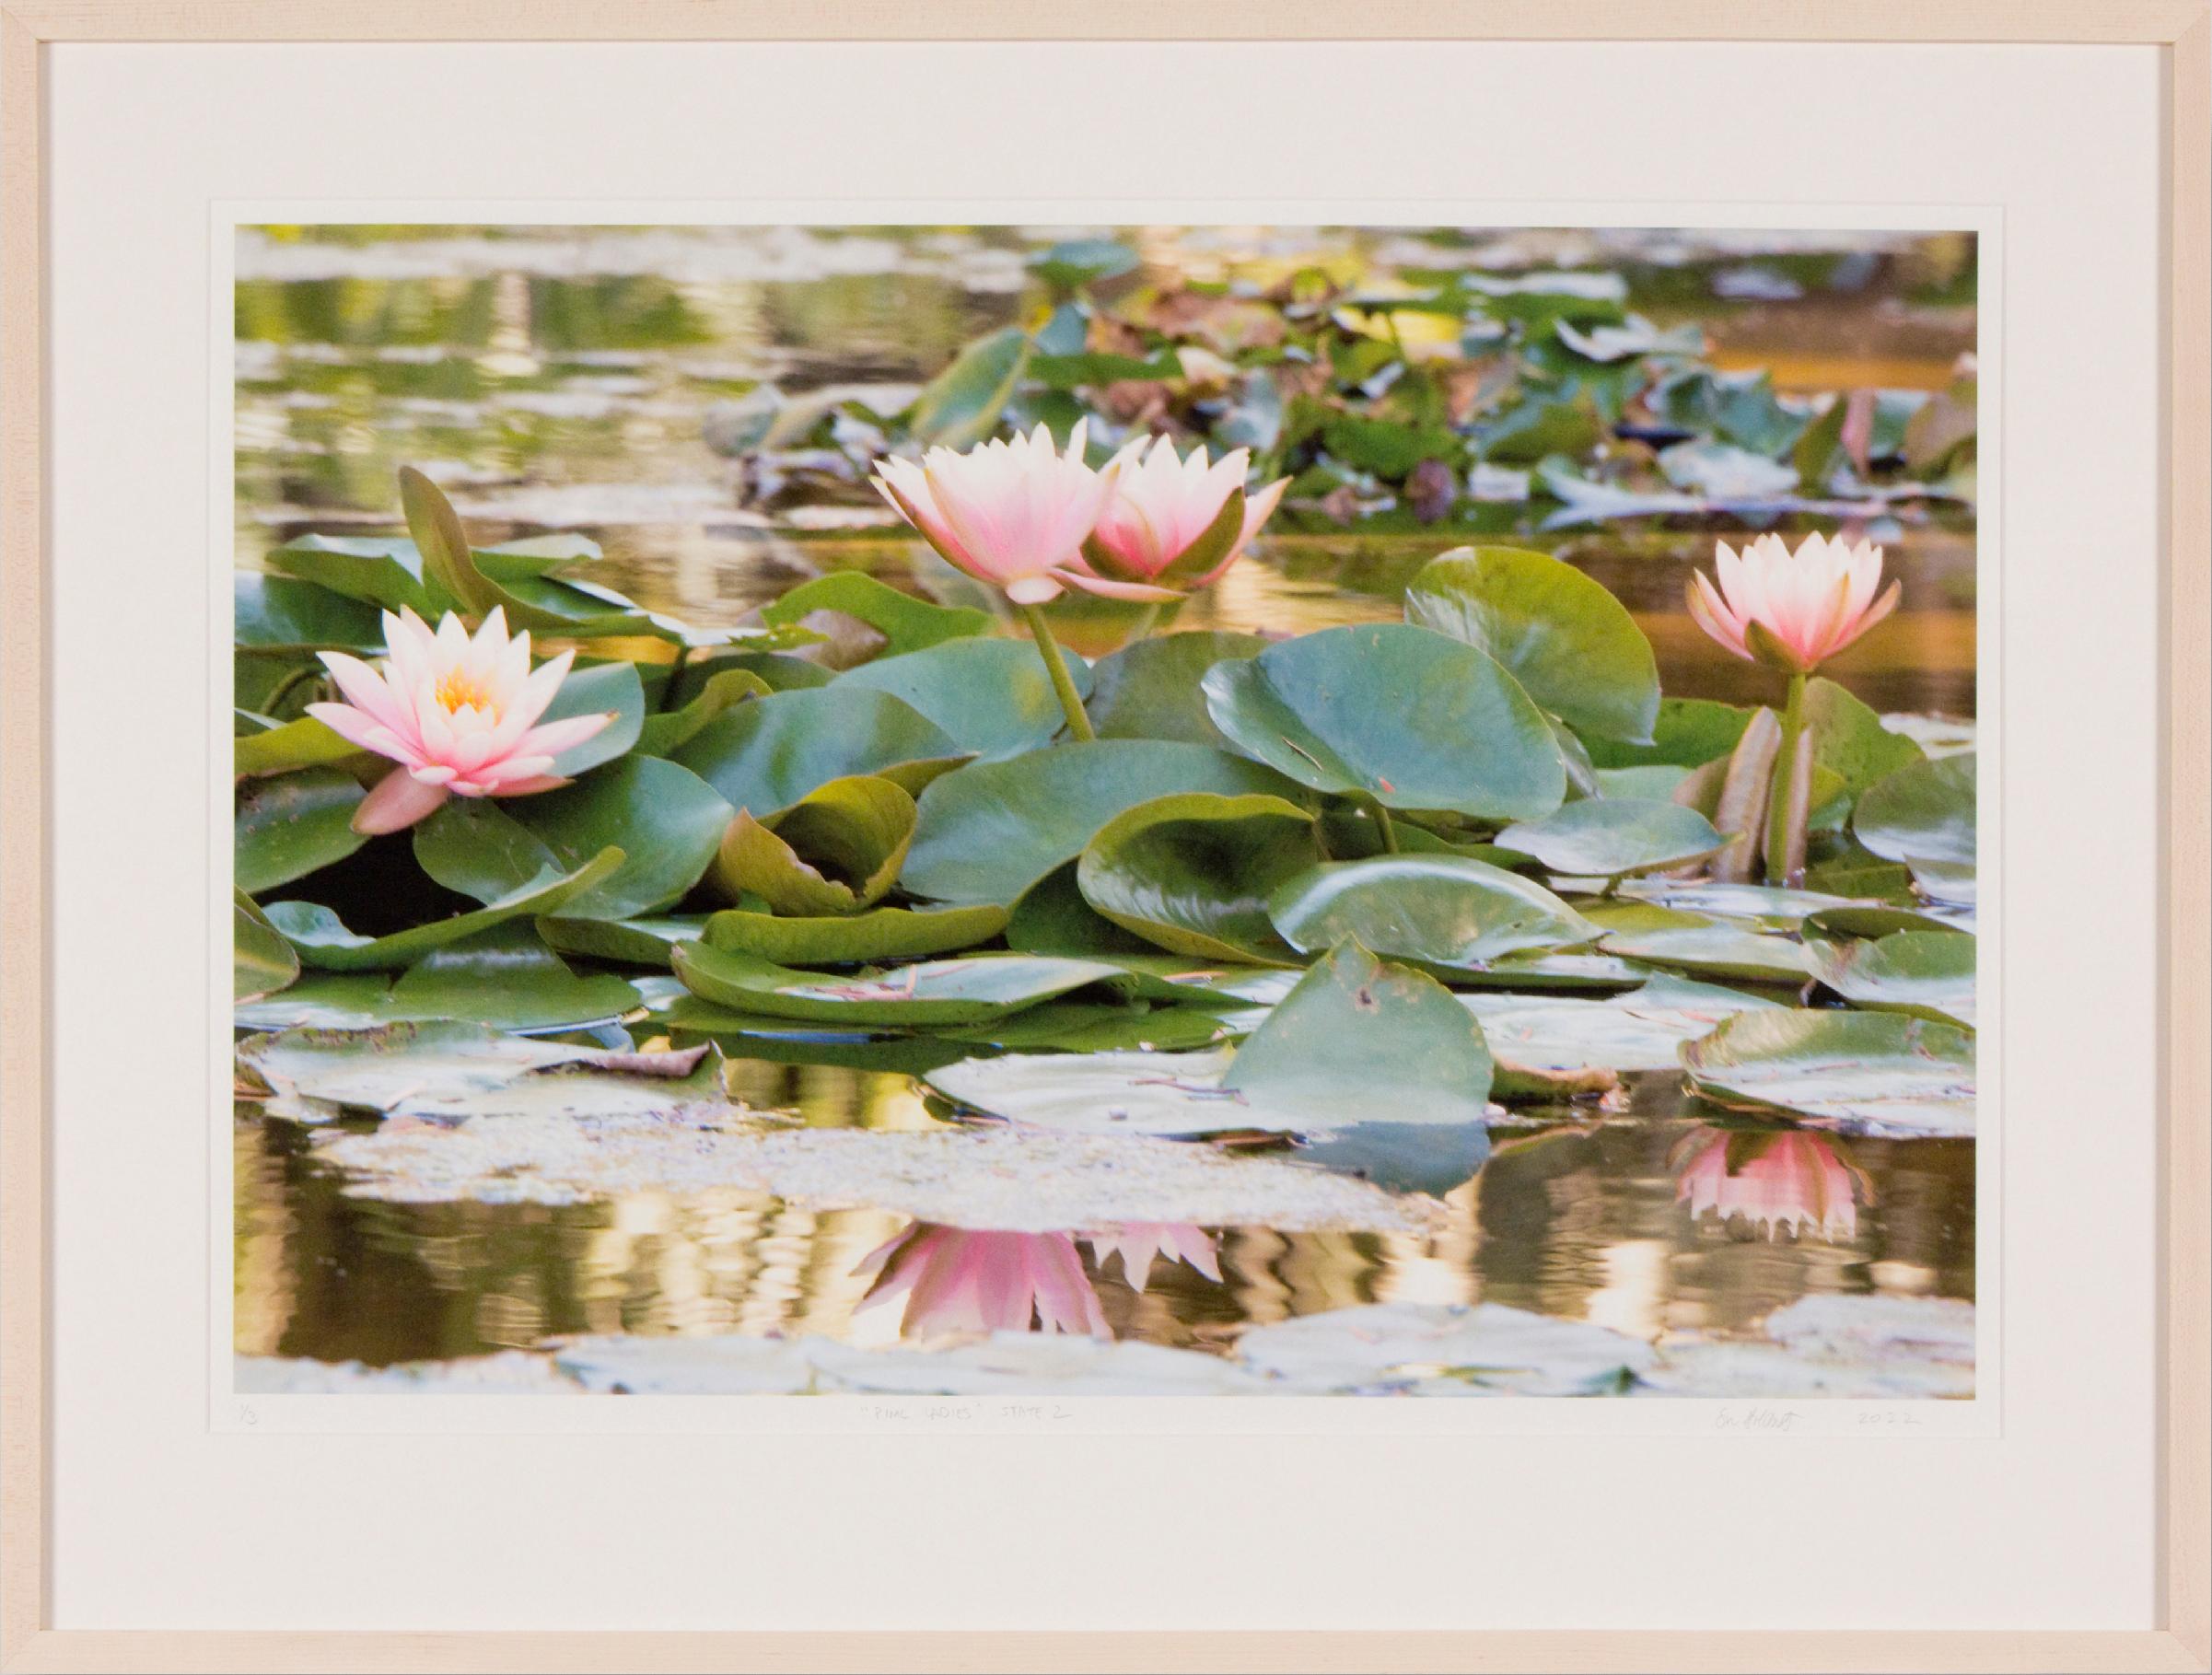 PINK LADIES STATE 2 - Photographie d'art floral / Lily d'eau / Jardin botanique